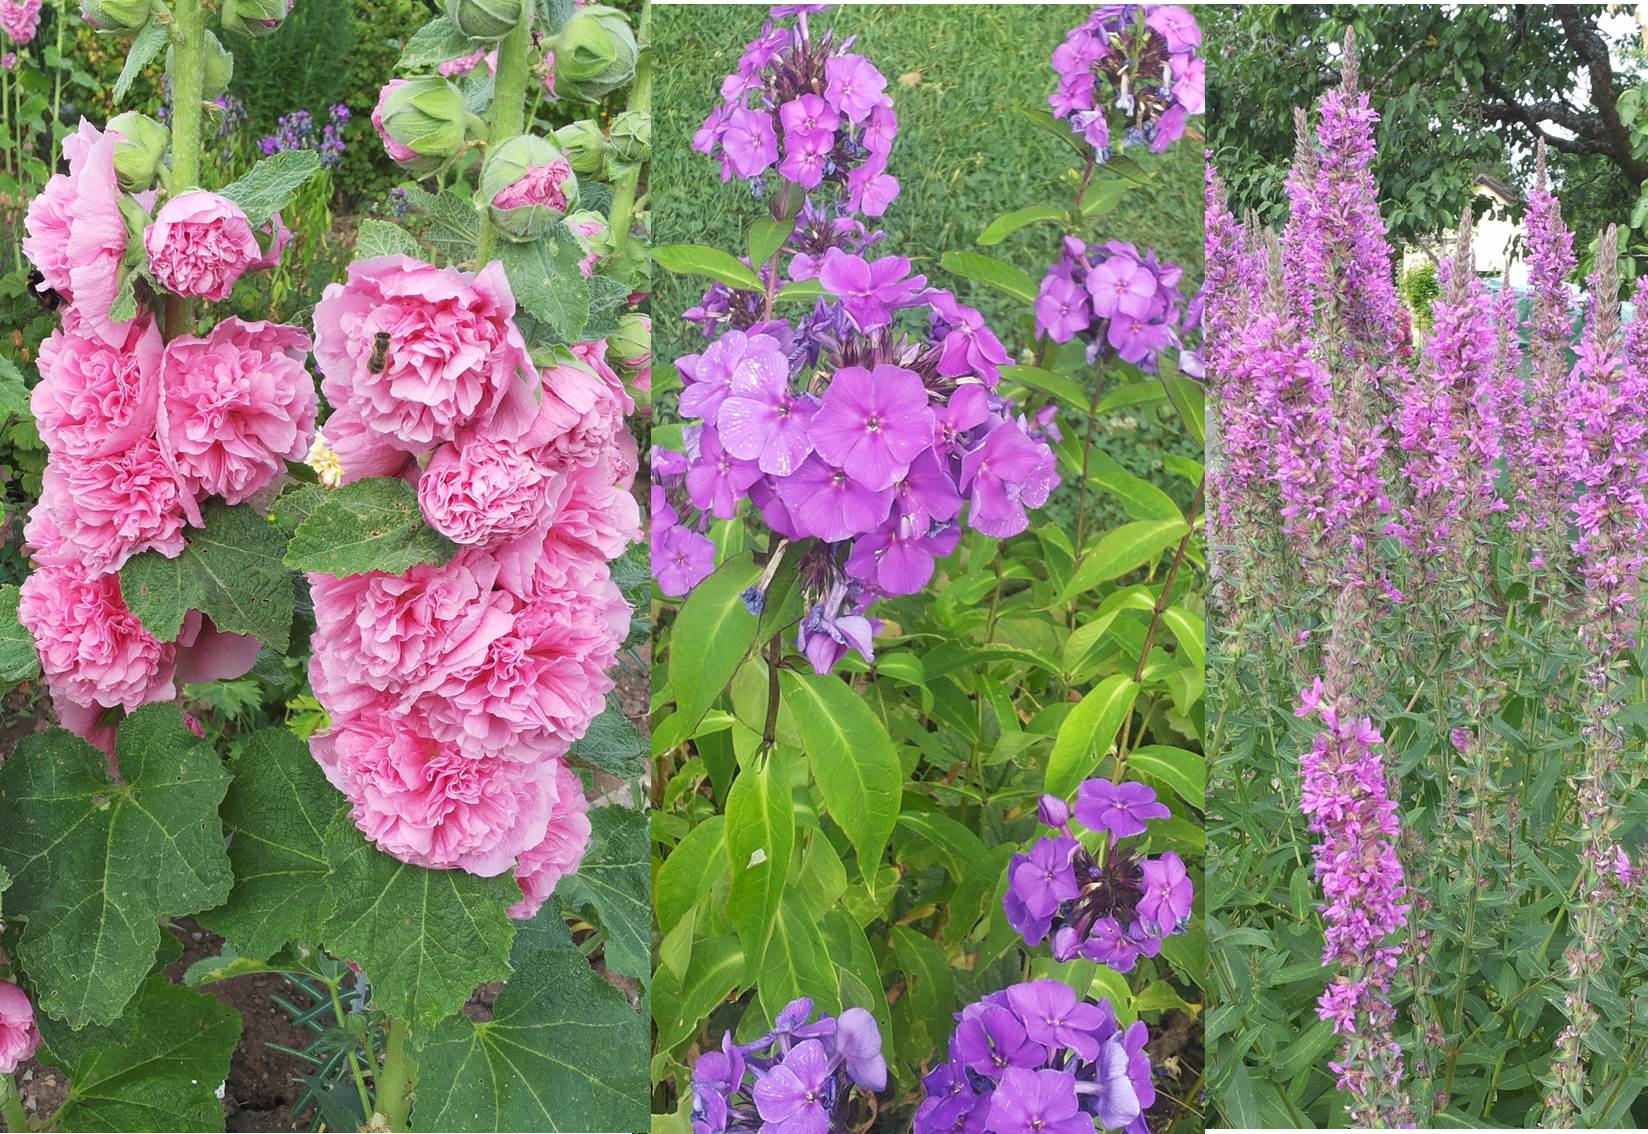 files/Redaktion/Gartentipps/Bilder/Juli 2015/Blumenpracht in meinem Garten.jpg